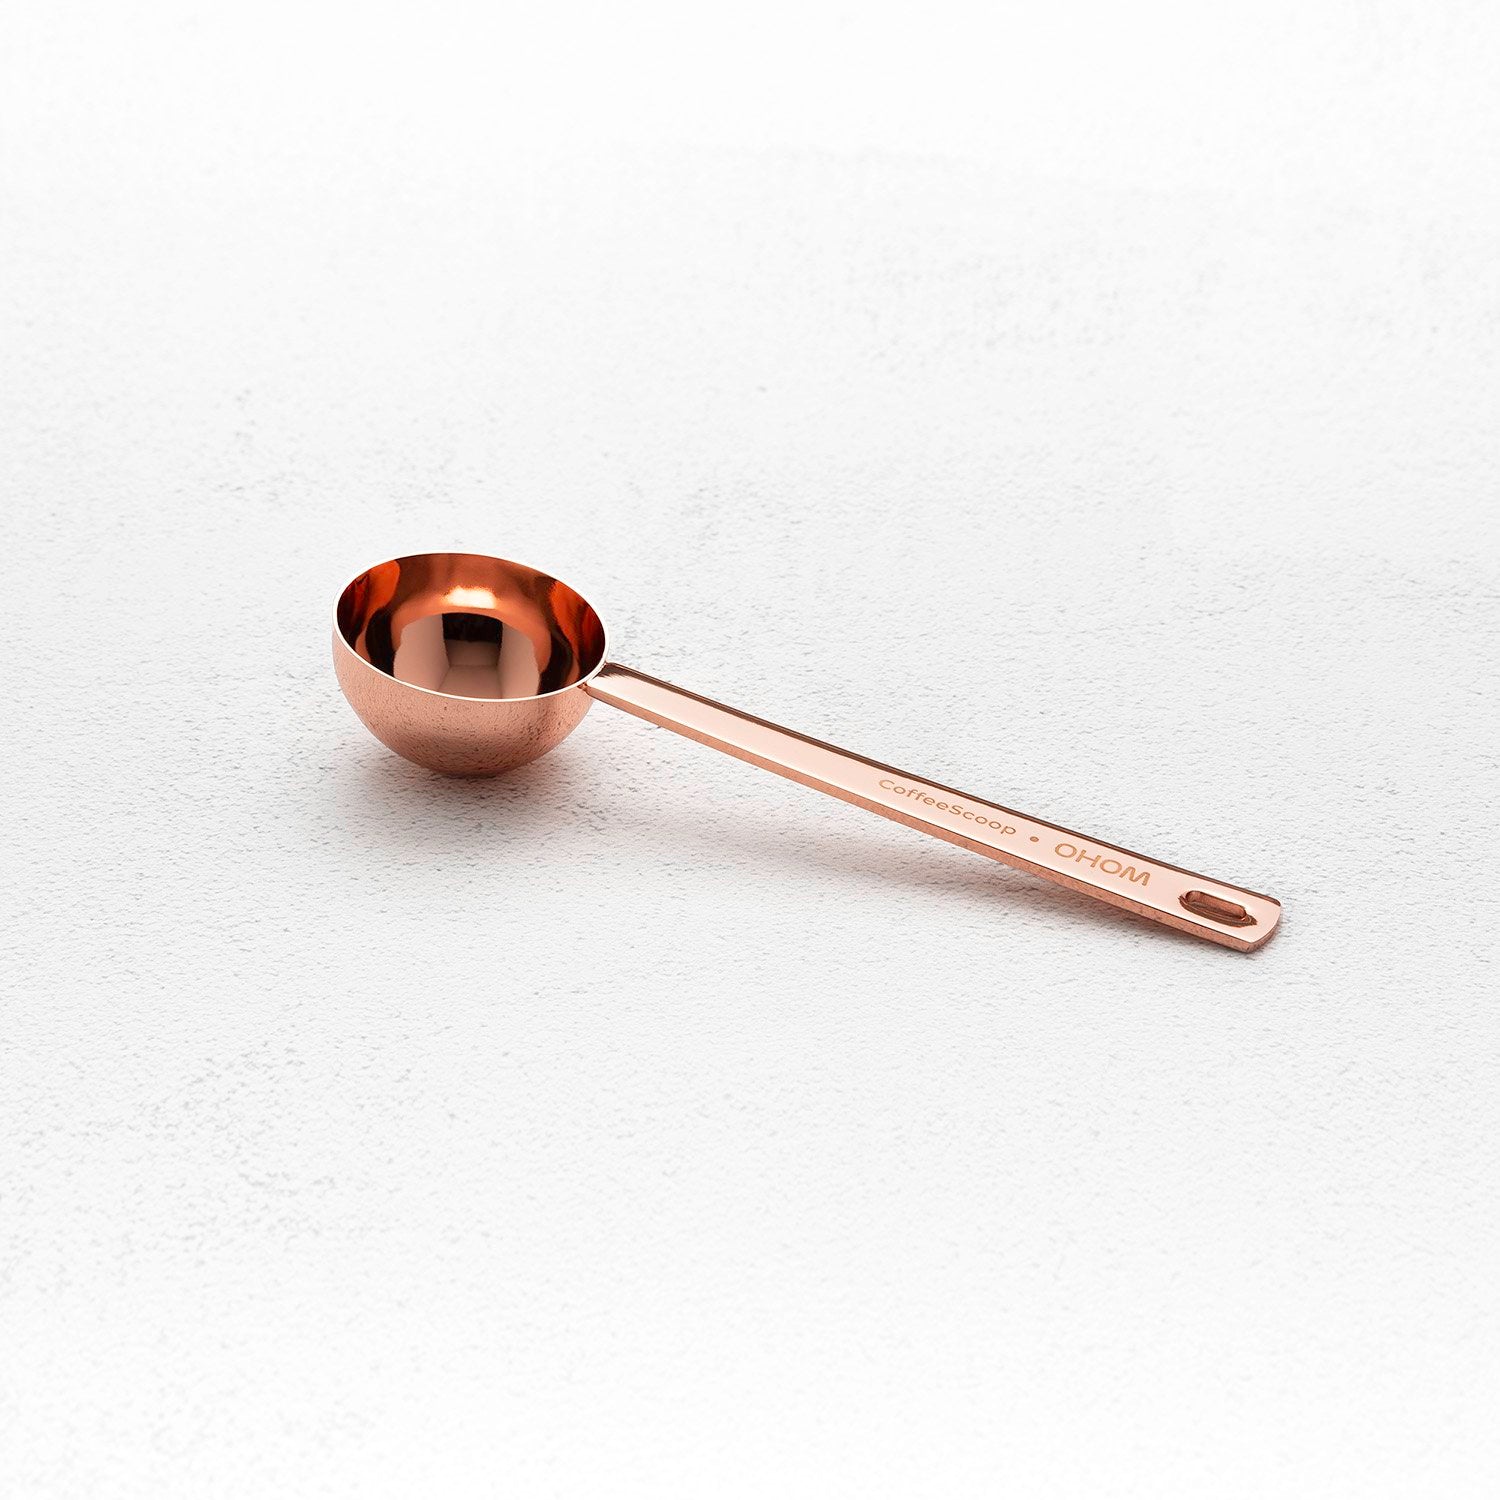 Copper colored coffee spoon